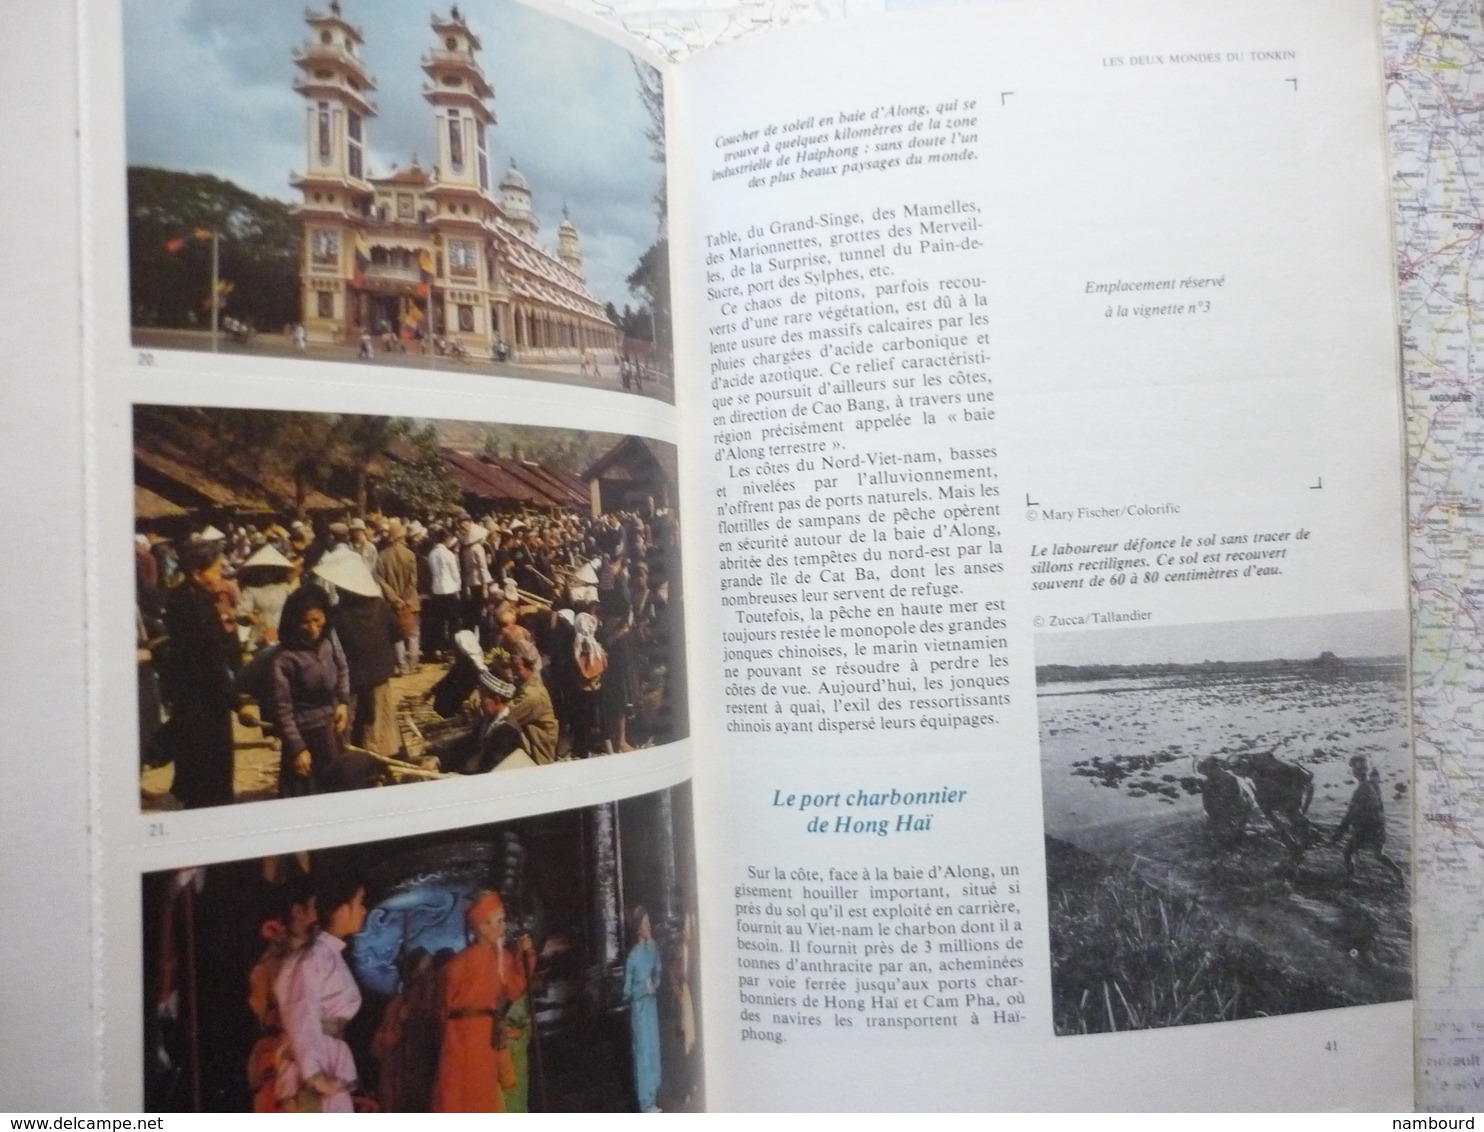 Geographia Tour du Monde Saint-Martin / Louxor / République Socialiste du Viet-Nam  N°238 Juillet 1979